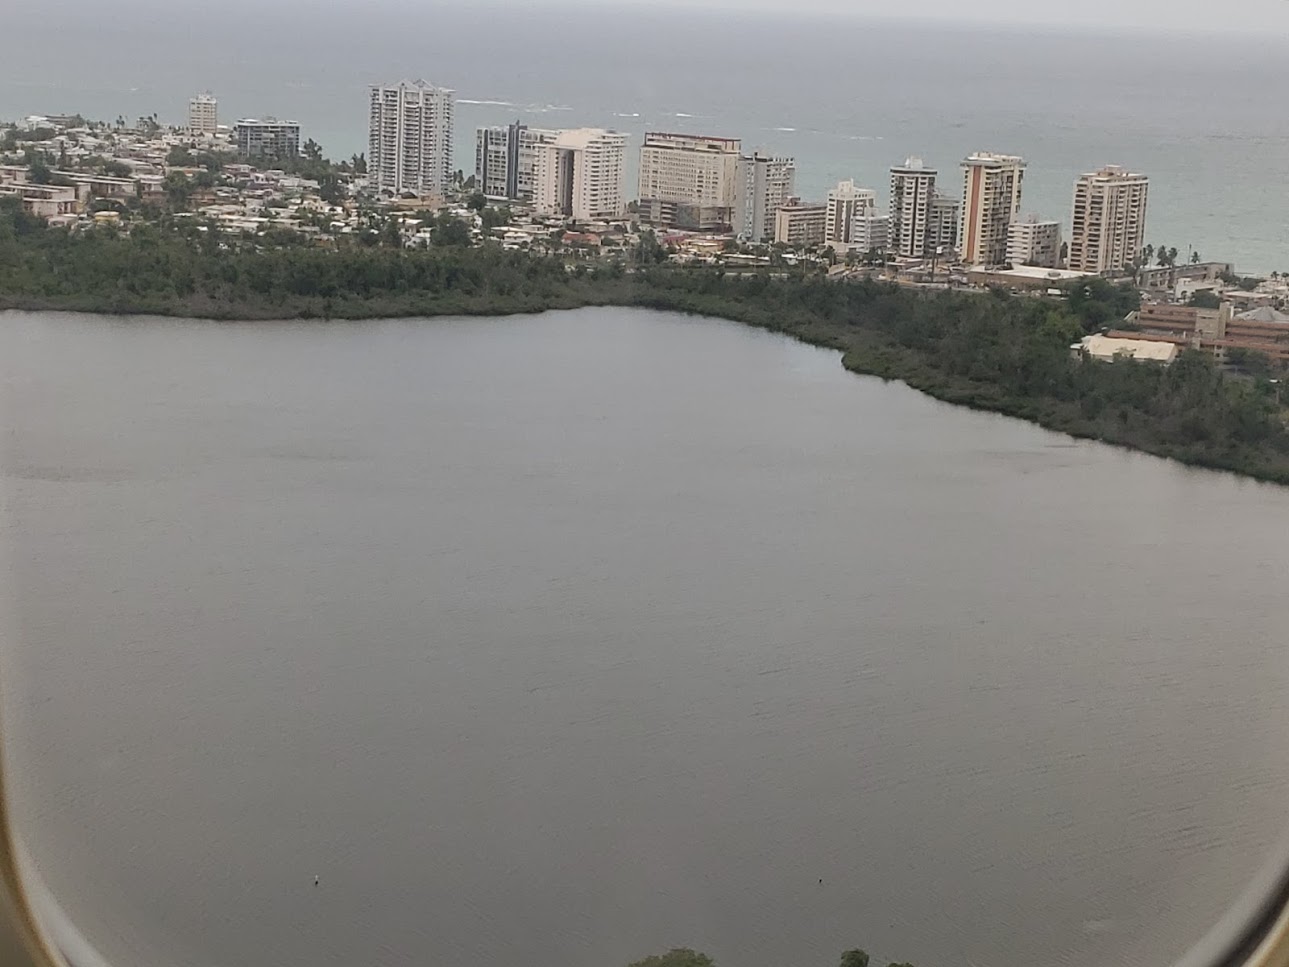 Puerto Rico Agosto 2018 - Aterrizando 14